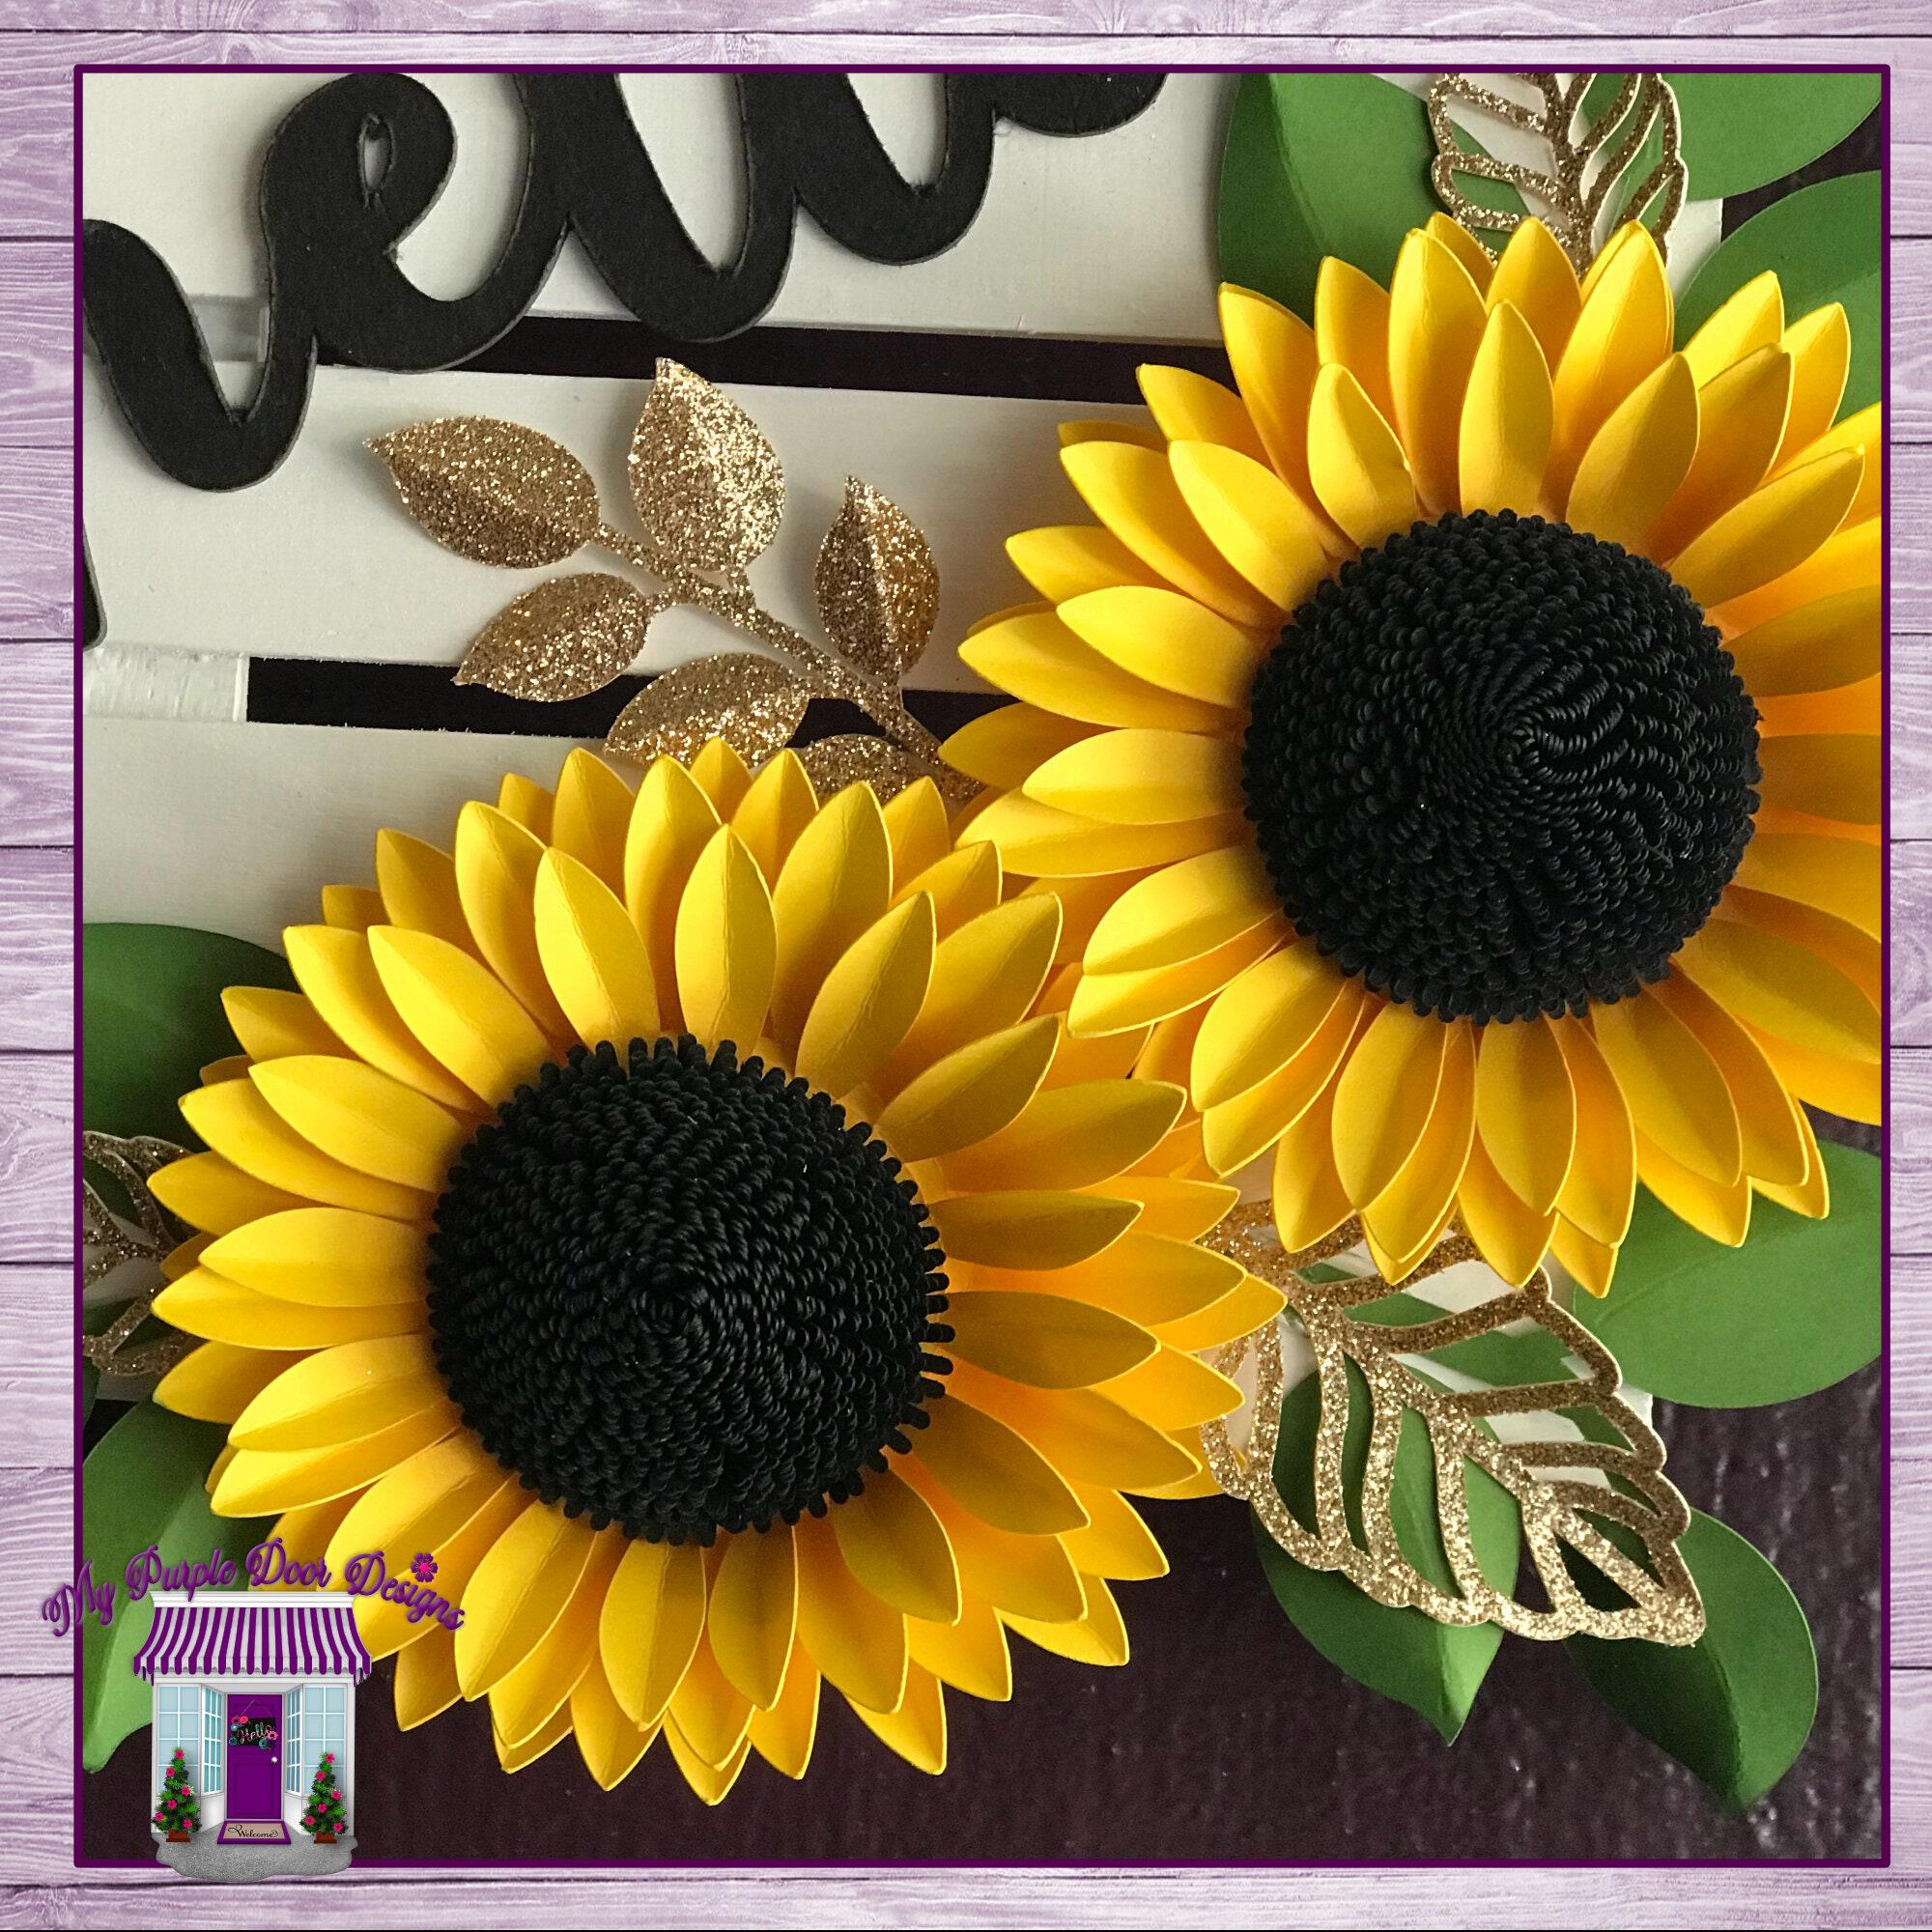 Sunflowers & Butterflies or Bees Kitchen Decor, Sunflower Cutting